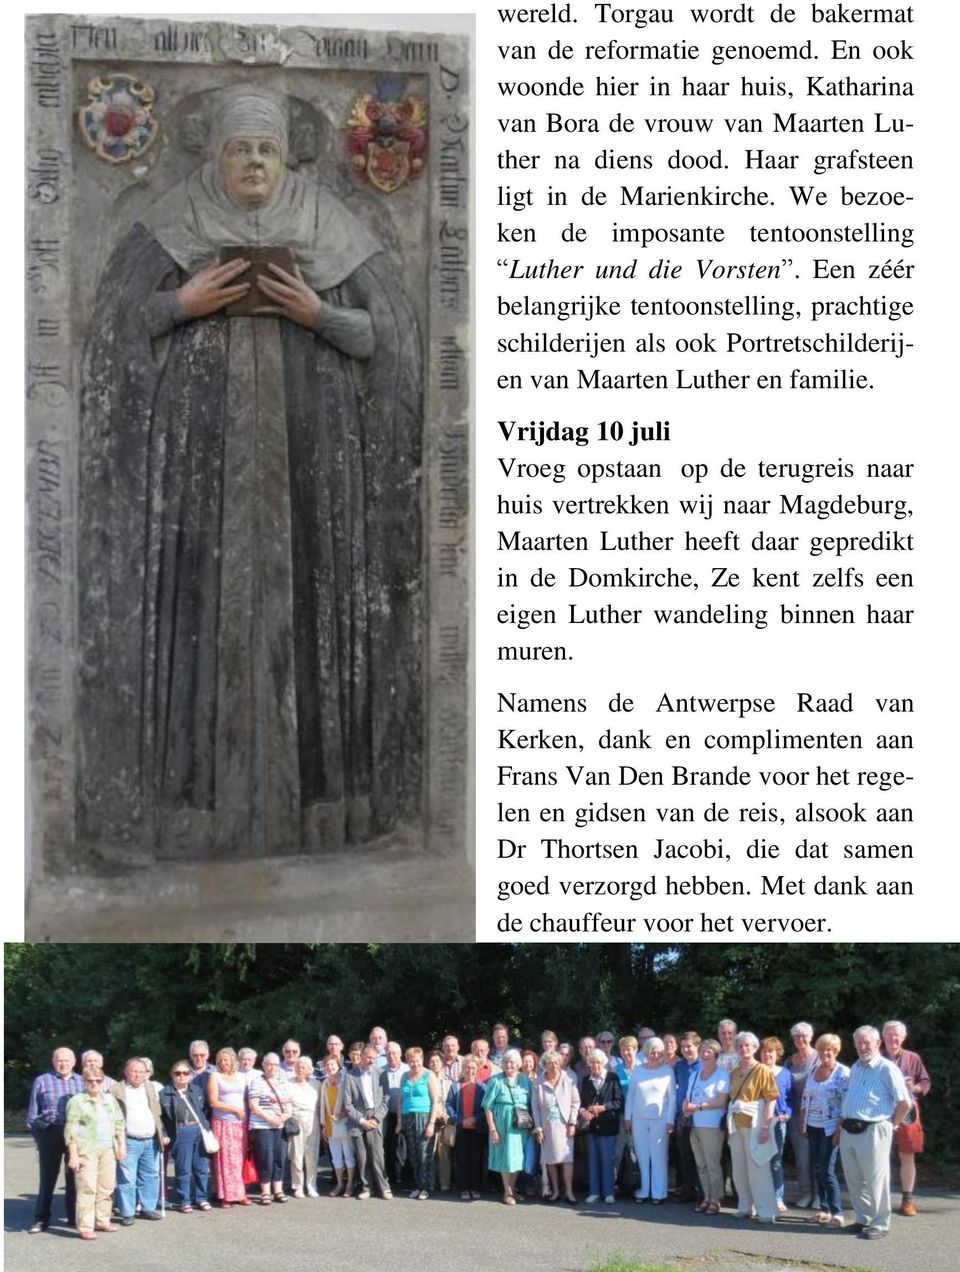 Vrijdag 10 juli Vroeg opstaan op de terugreis naar huis vertrekken wij naar Magdeburg, Maarten Luther heeft daar gepredikt in de Domkirche, Ze kent zelfs een eigen Luther wandeling binnen haar muren.